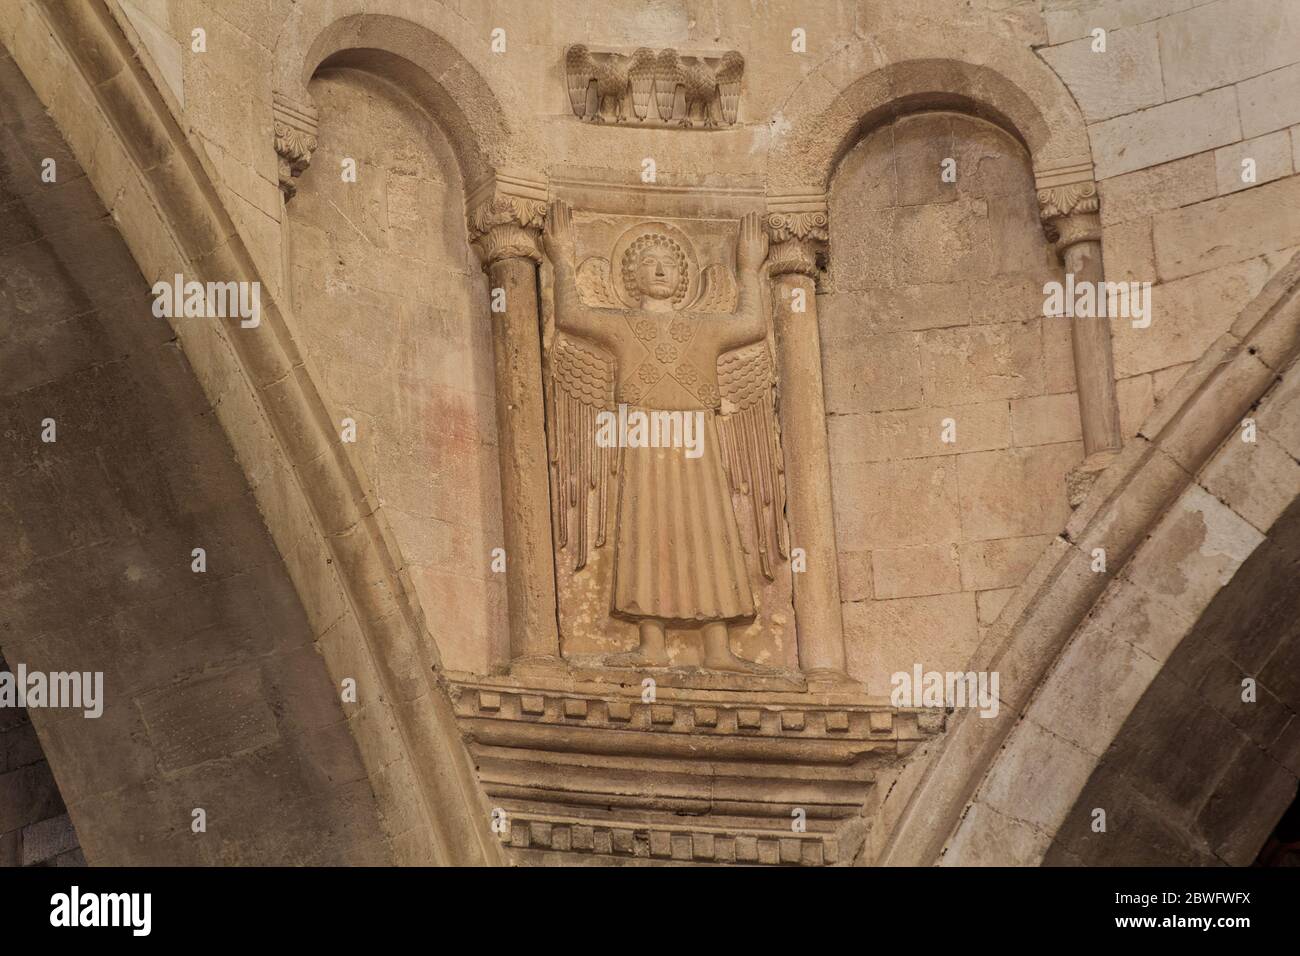 Ange priant avec ses bras élevés au ciel - style roman-byzantin - Cathédrale Saint Cyriacus le Martyr - Ancône, Marche, Italie Banque D'Images